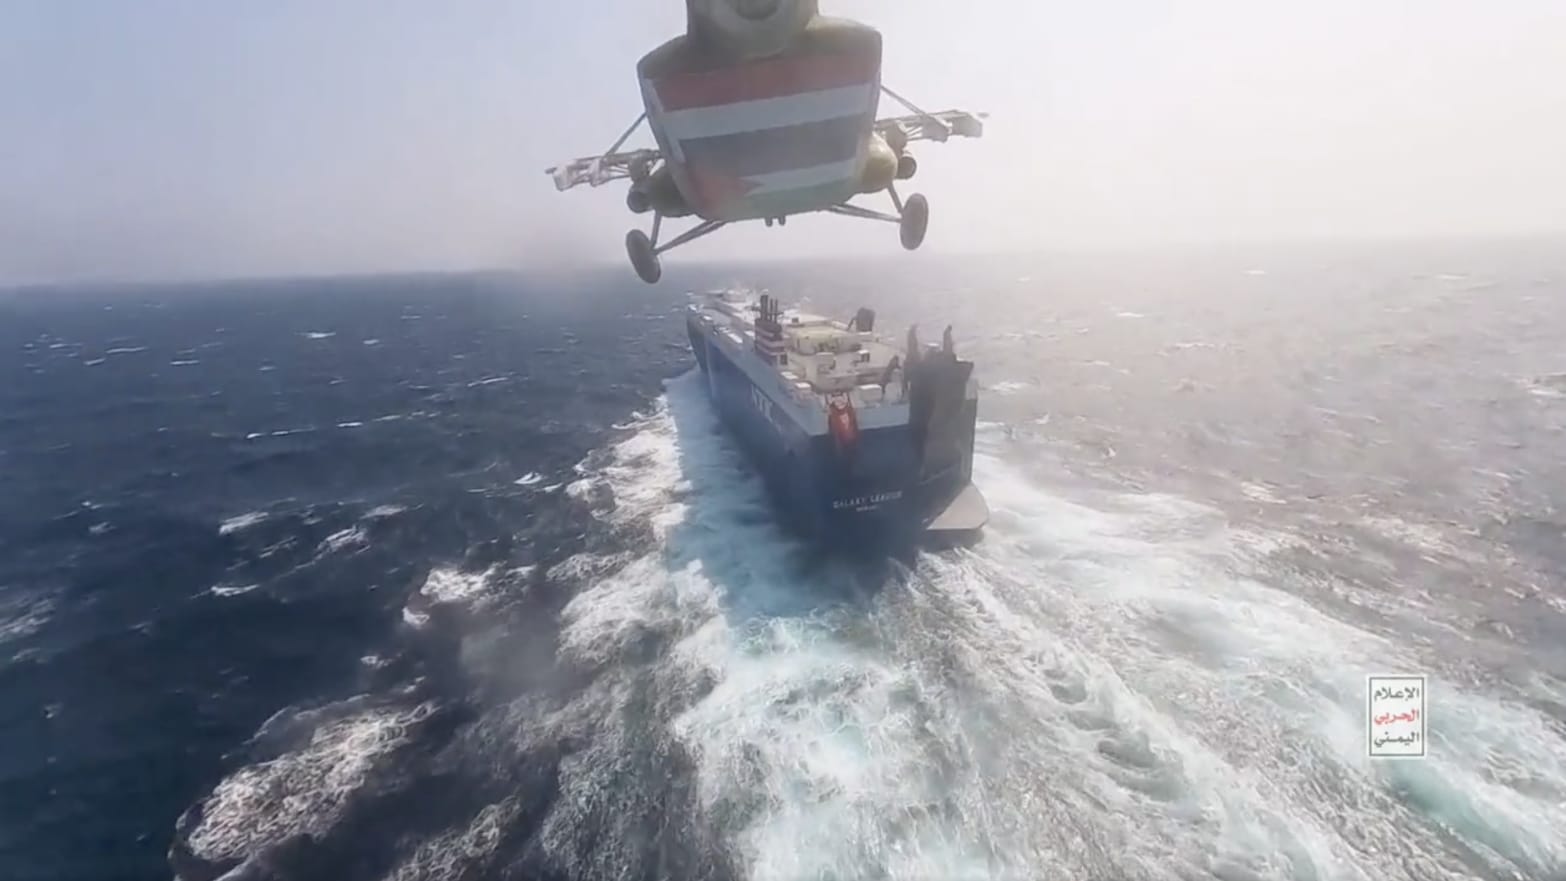 A helicopter descending toward a cargo ship at sea.